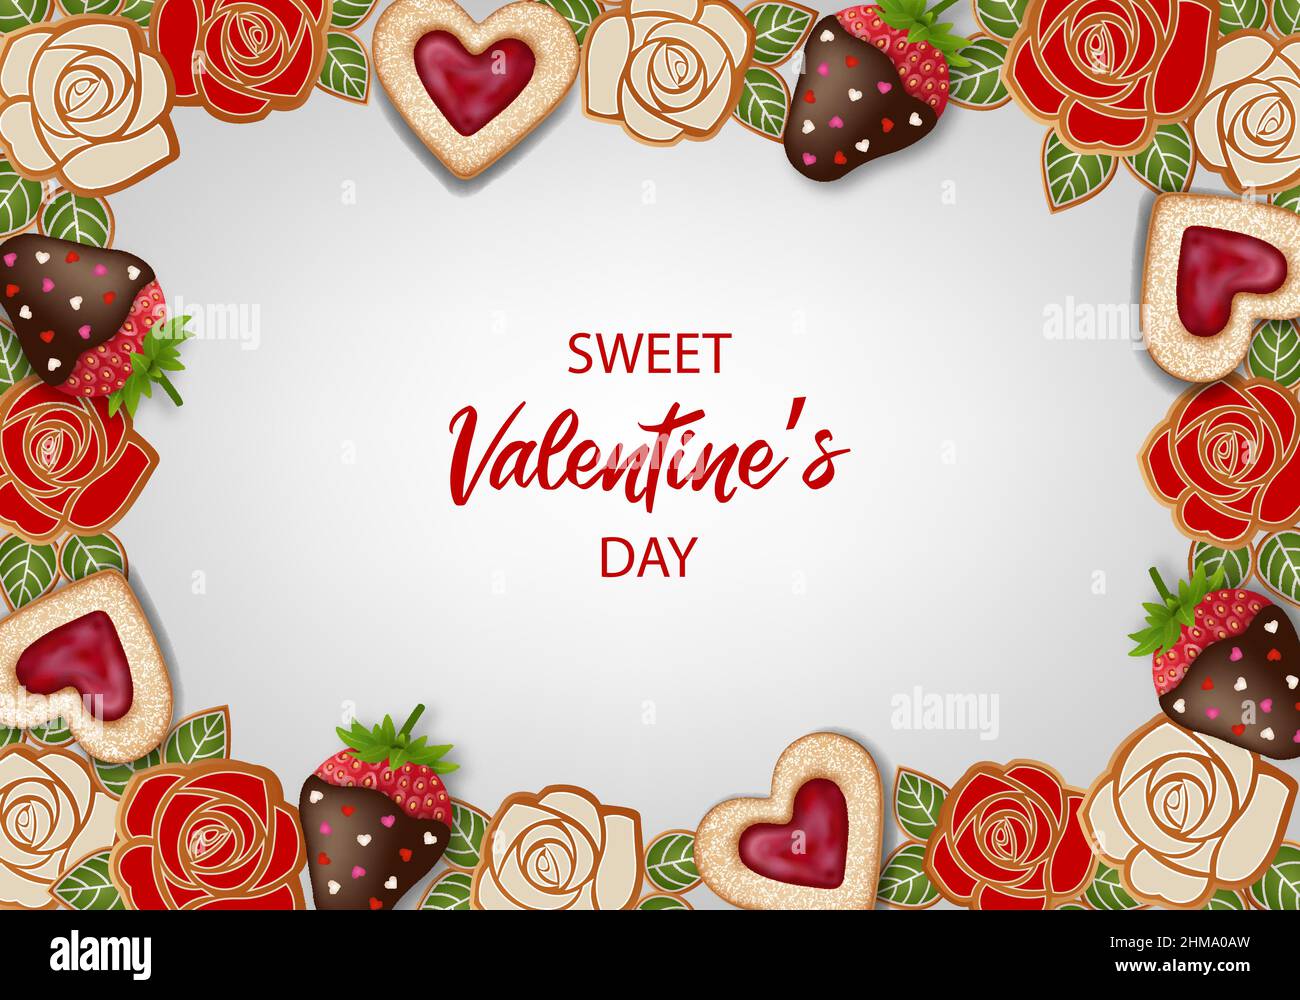 Le fond de la Saint-Valentin avec gâteaux, biscuits et bonbons Illustration de Vecteur